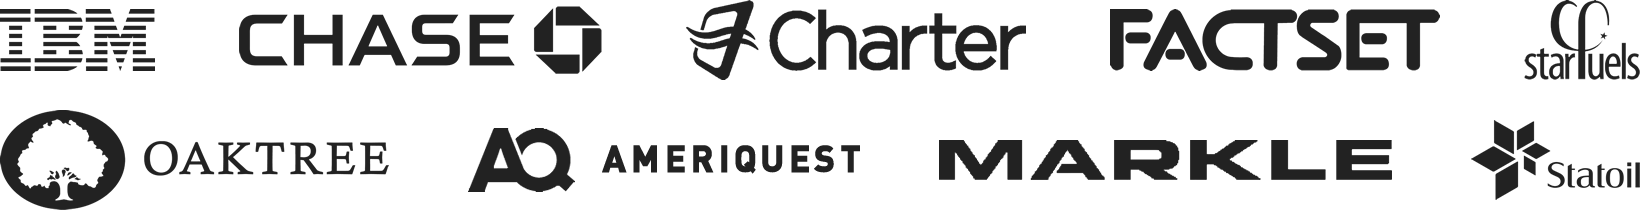 IBM - Chase - Charter - Factset - Starfuels - Oaktree - AmeriQuest - Markle - Statoil